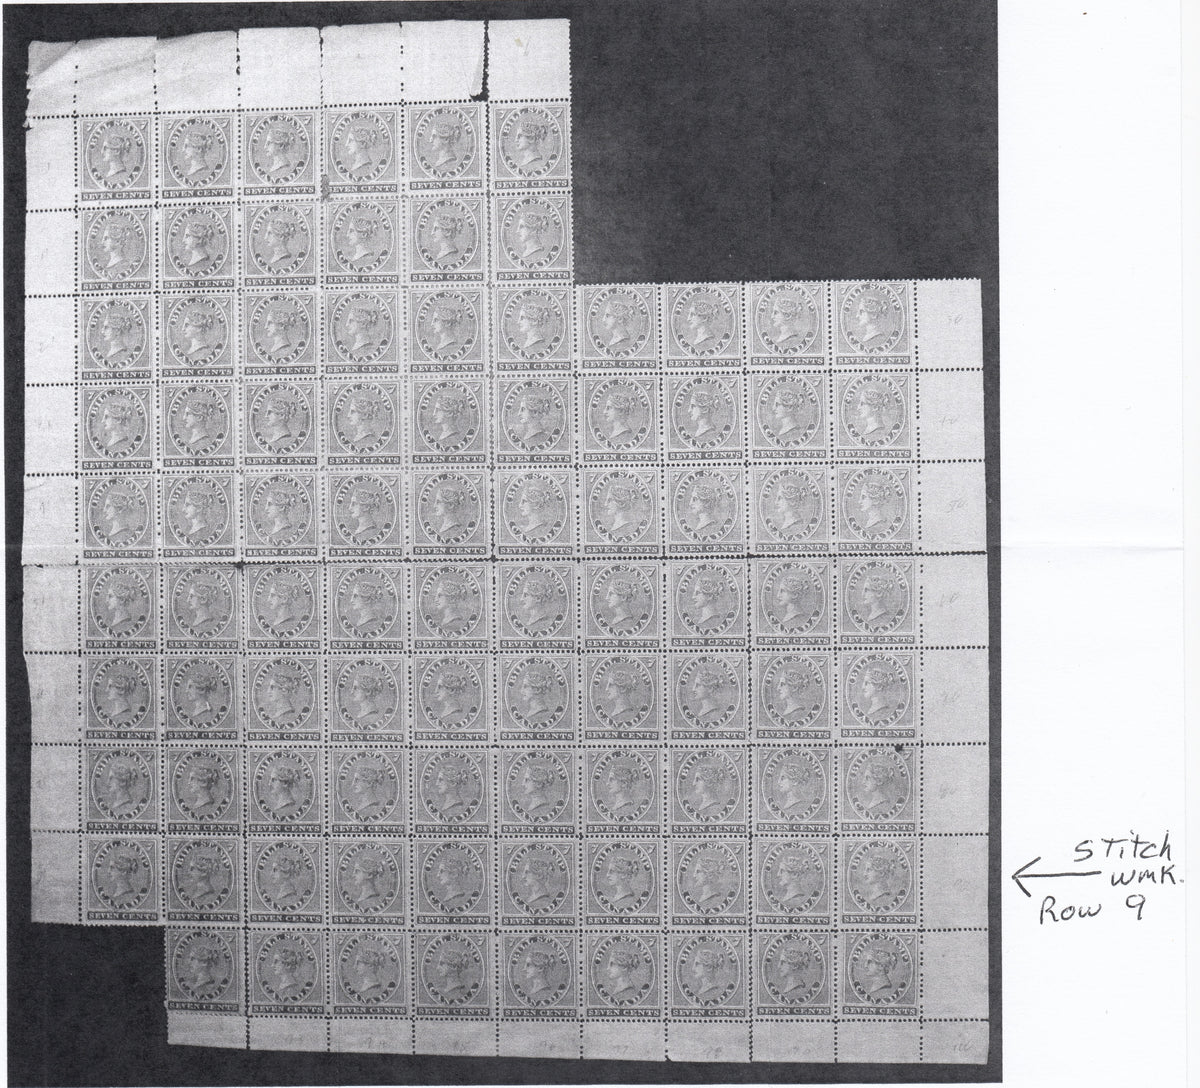 0007FB2110 - FB7 - Mint Strip, Unlisted Stitch Watermark